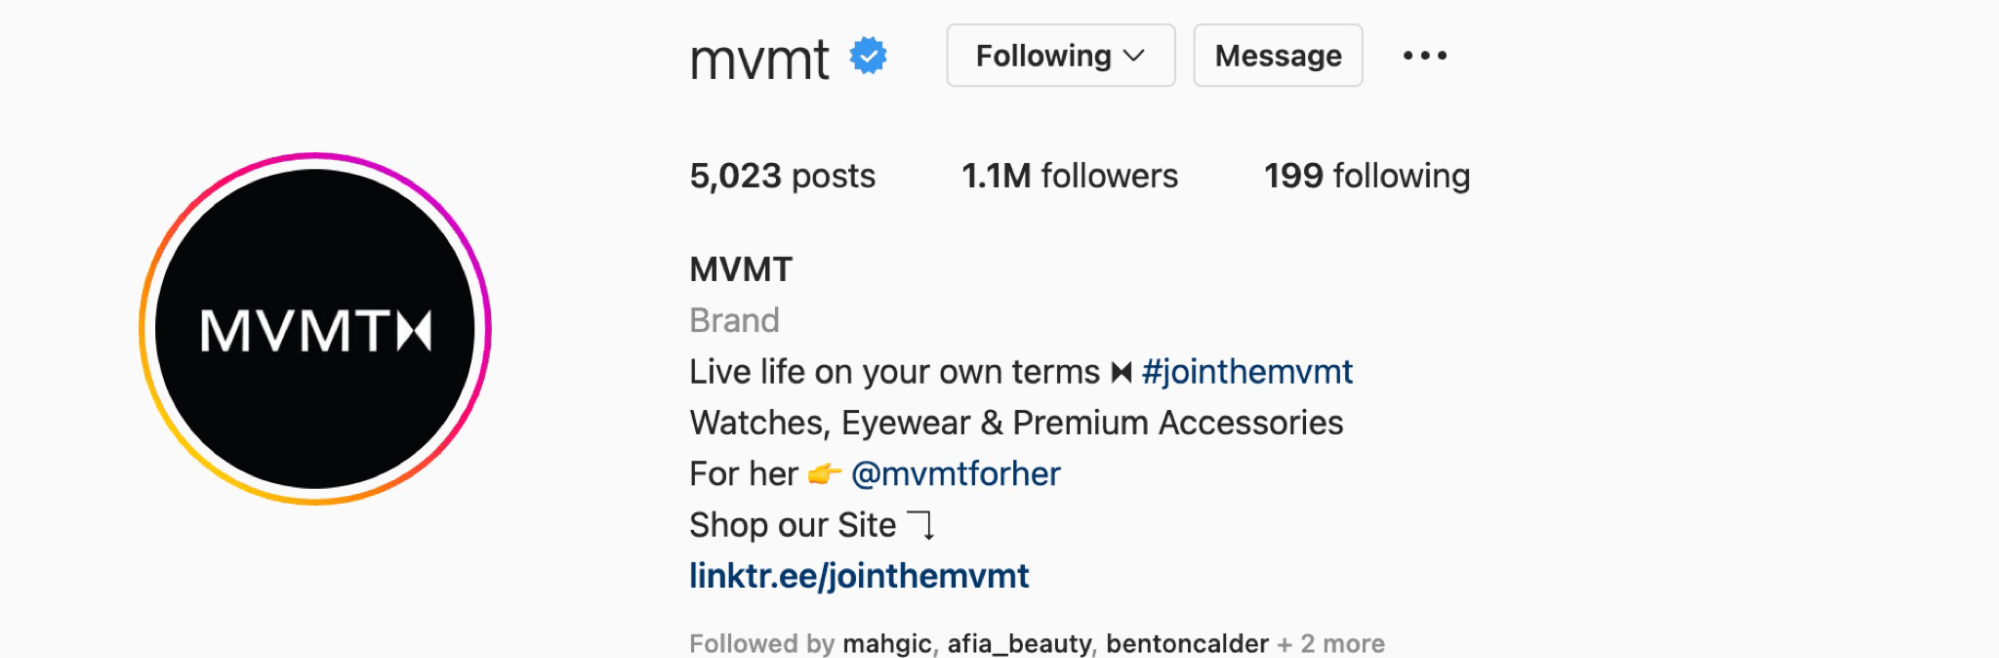 Une capture d'écran du profil Instagram de MVMT montrant comment il promeut l'UGC par le biais de son hashtag de marque